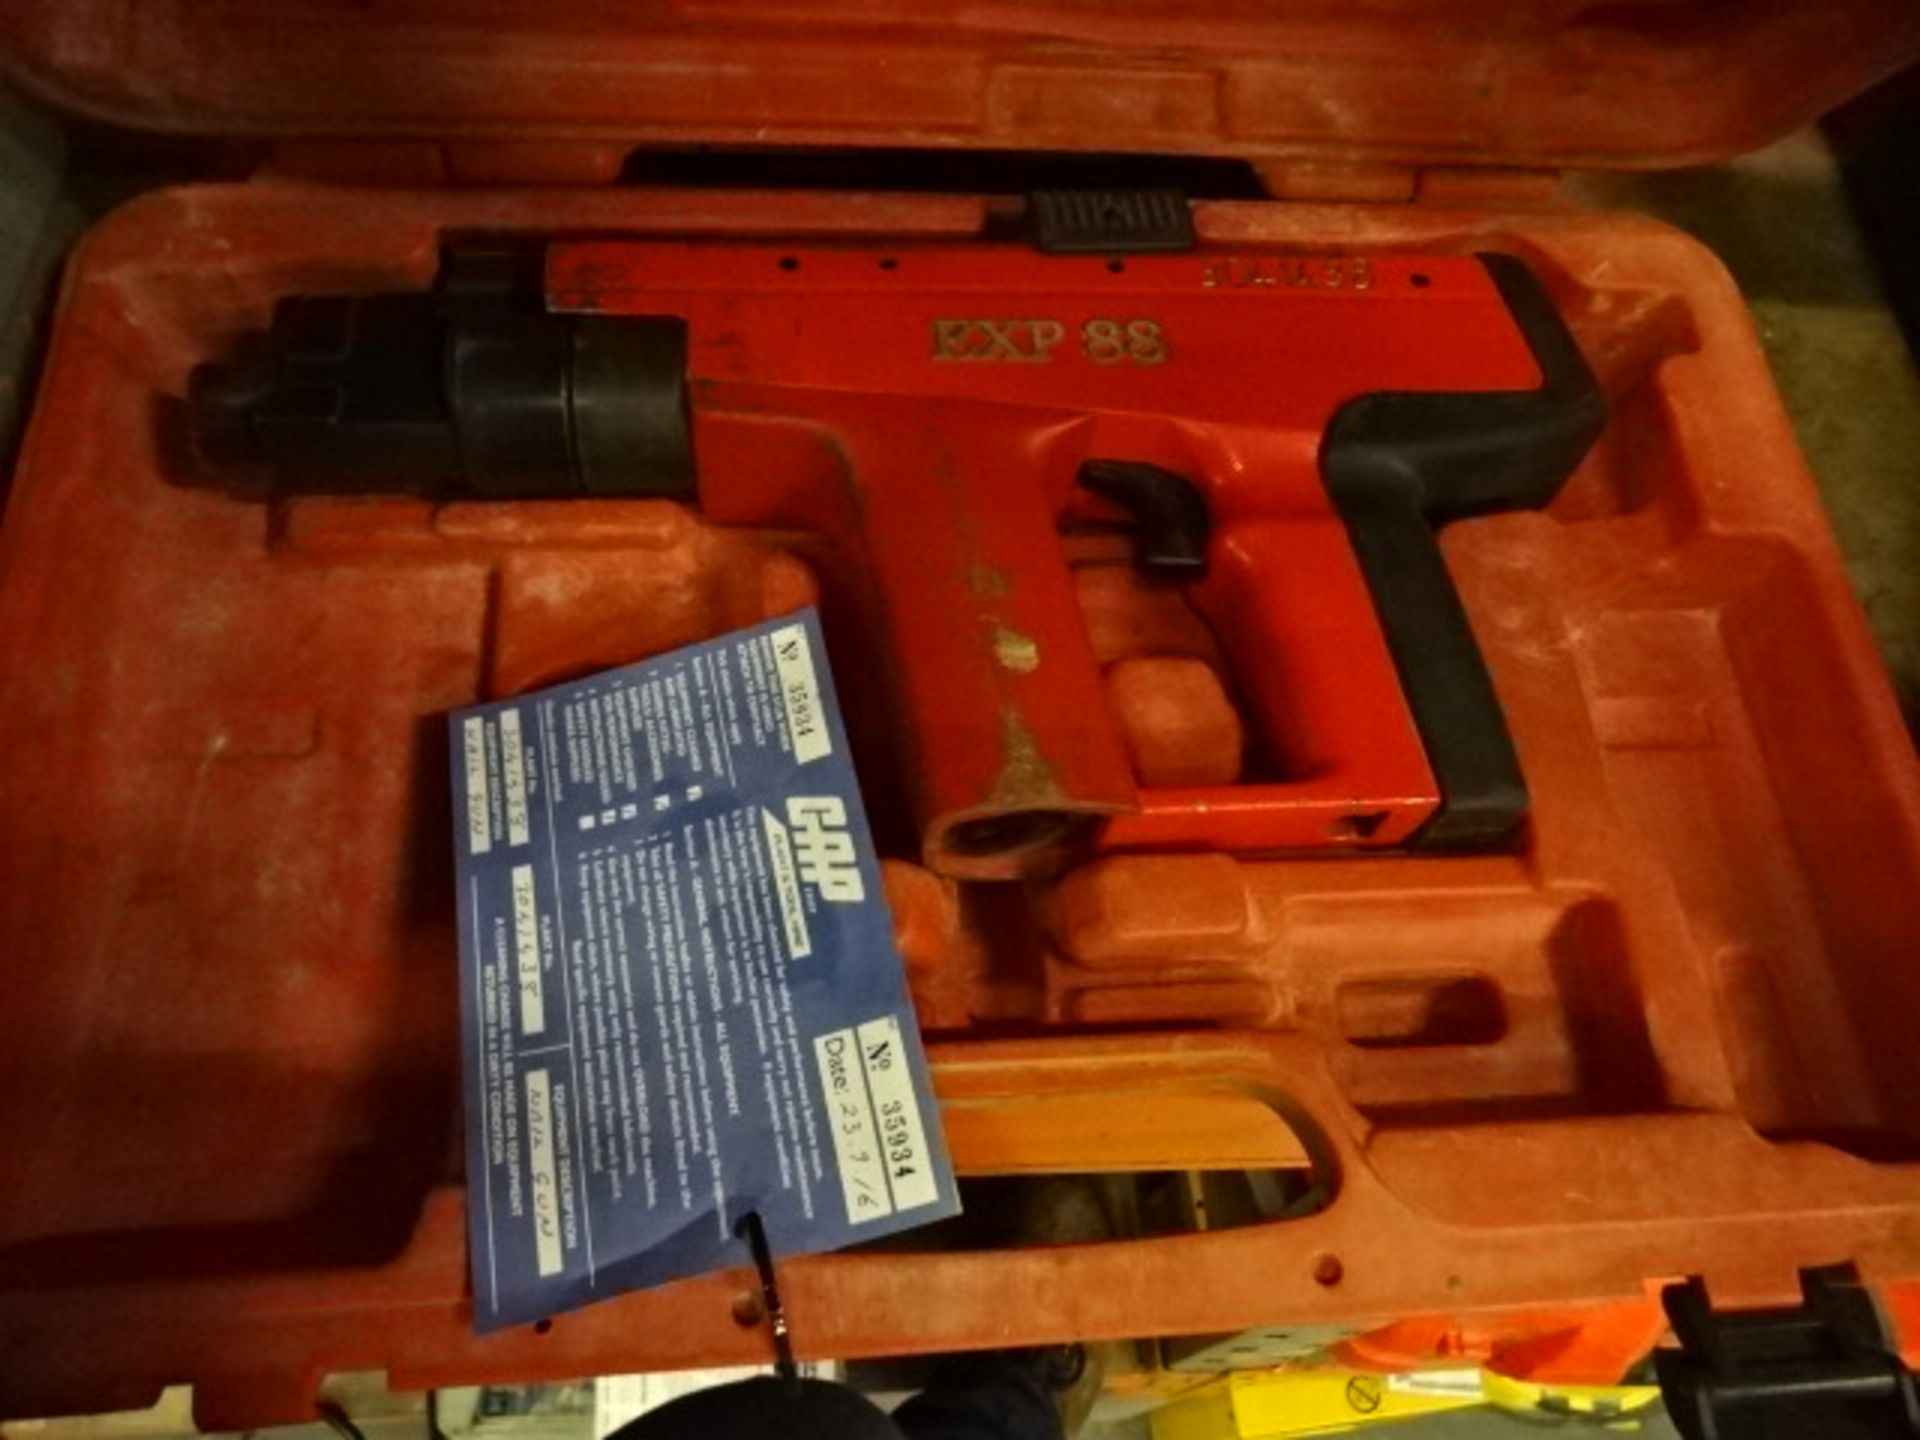 EXP88 nail gun c/w case